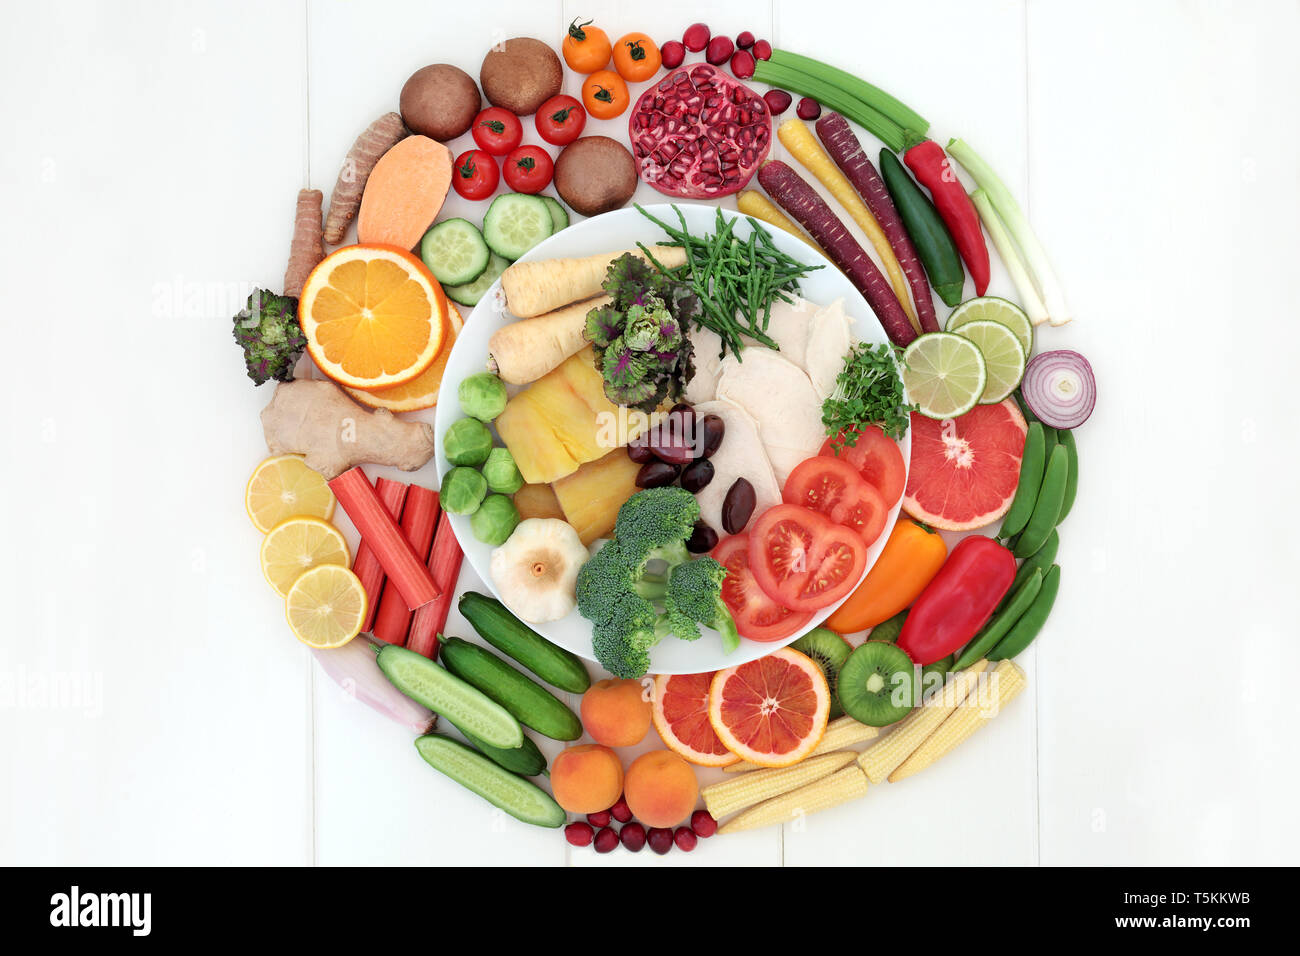 Gesundheit Ernährung für ein gesundes Leben Konzept mit Fleisch, Fisch, frisches Obst, Gemüse und Gewürze mit Lebensmittel, die einen hohen Gehalt an Anthocyanen und Antioxidantien. Stockfoto